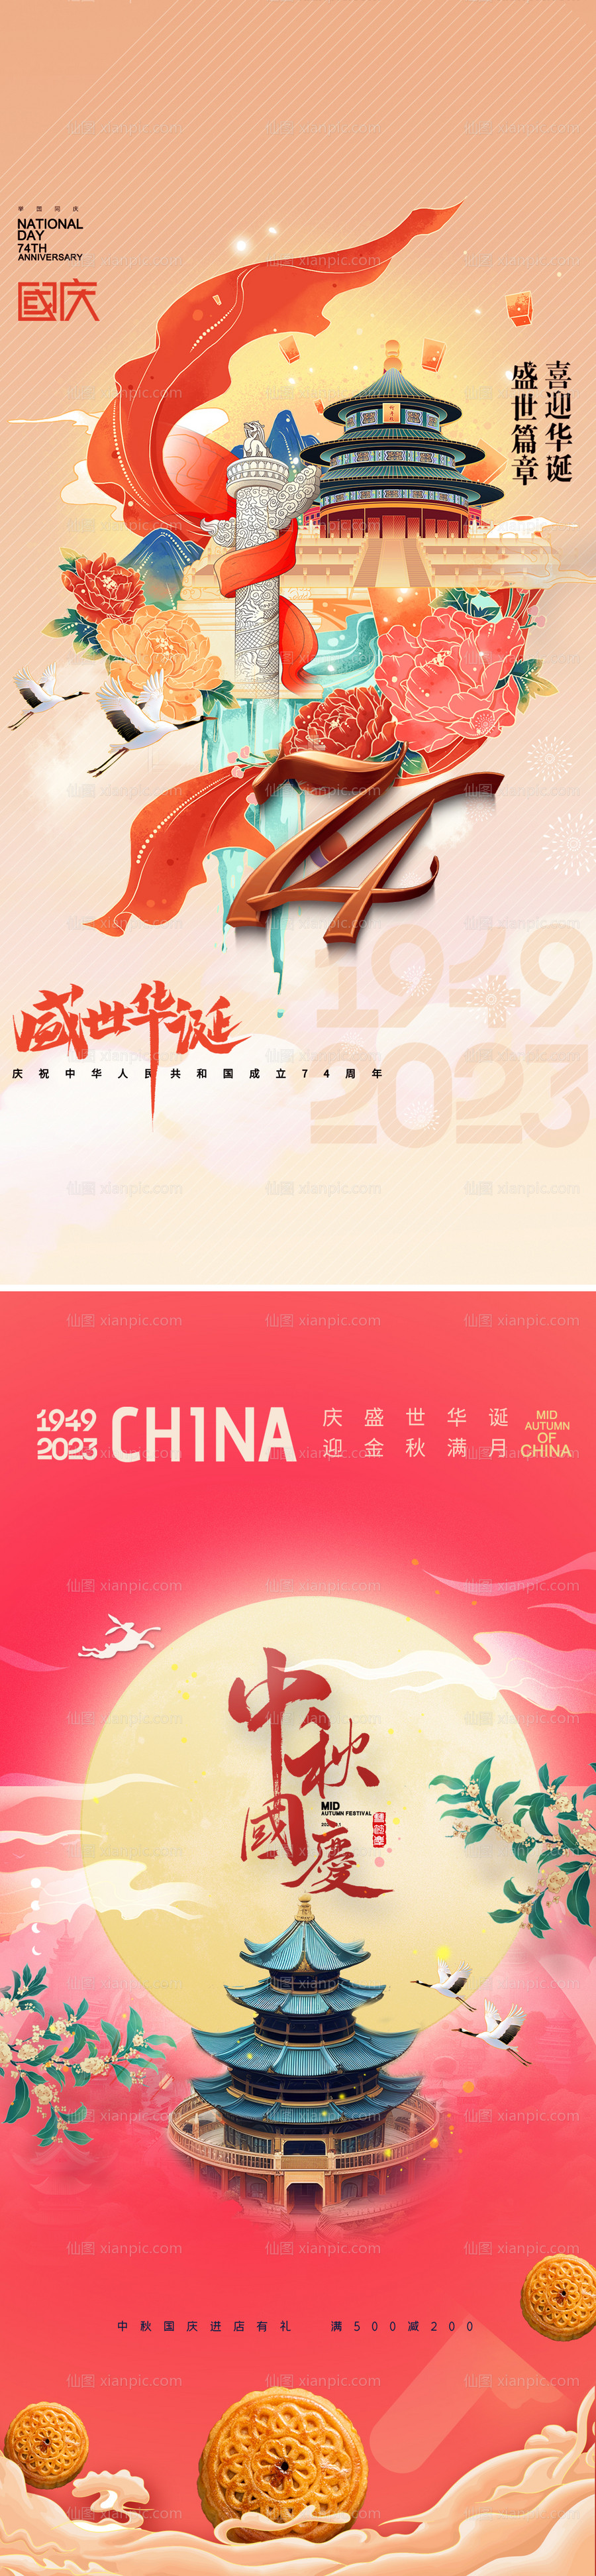 素材乐-国庆节74周年海报